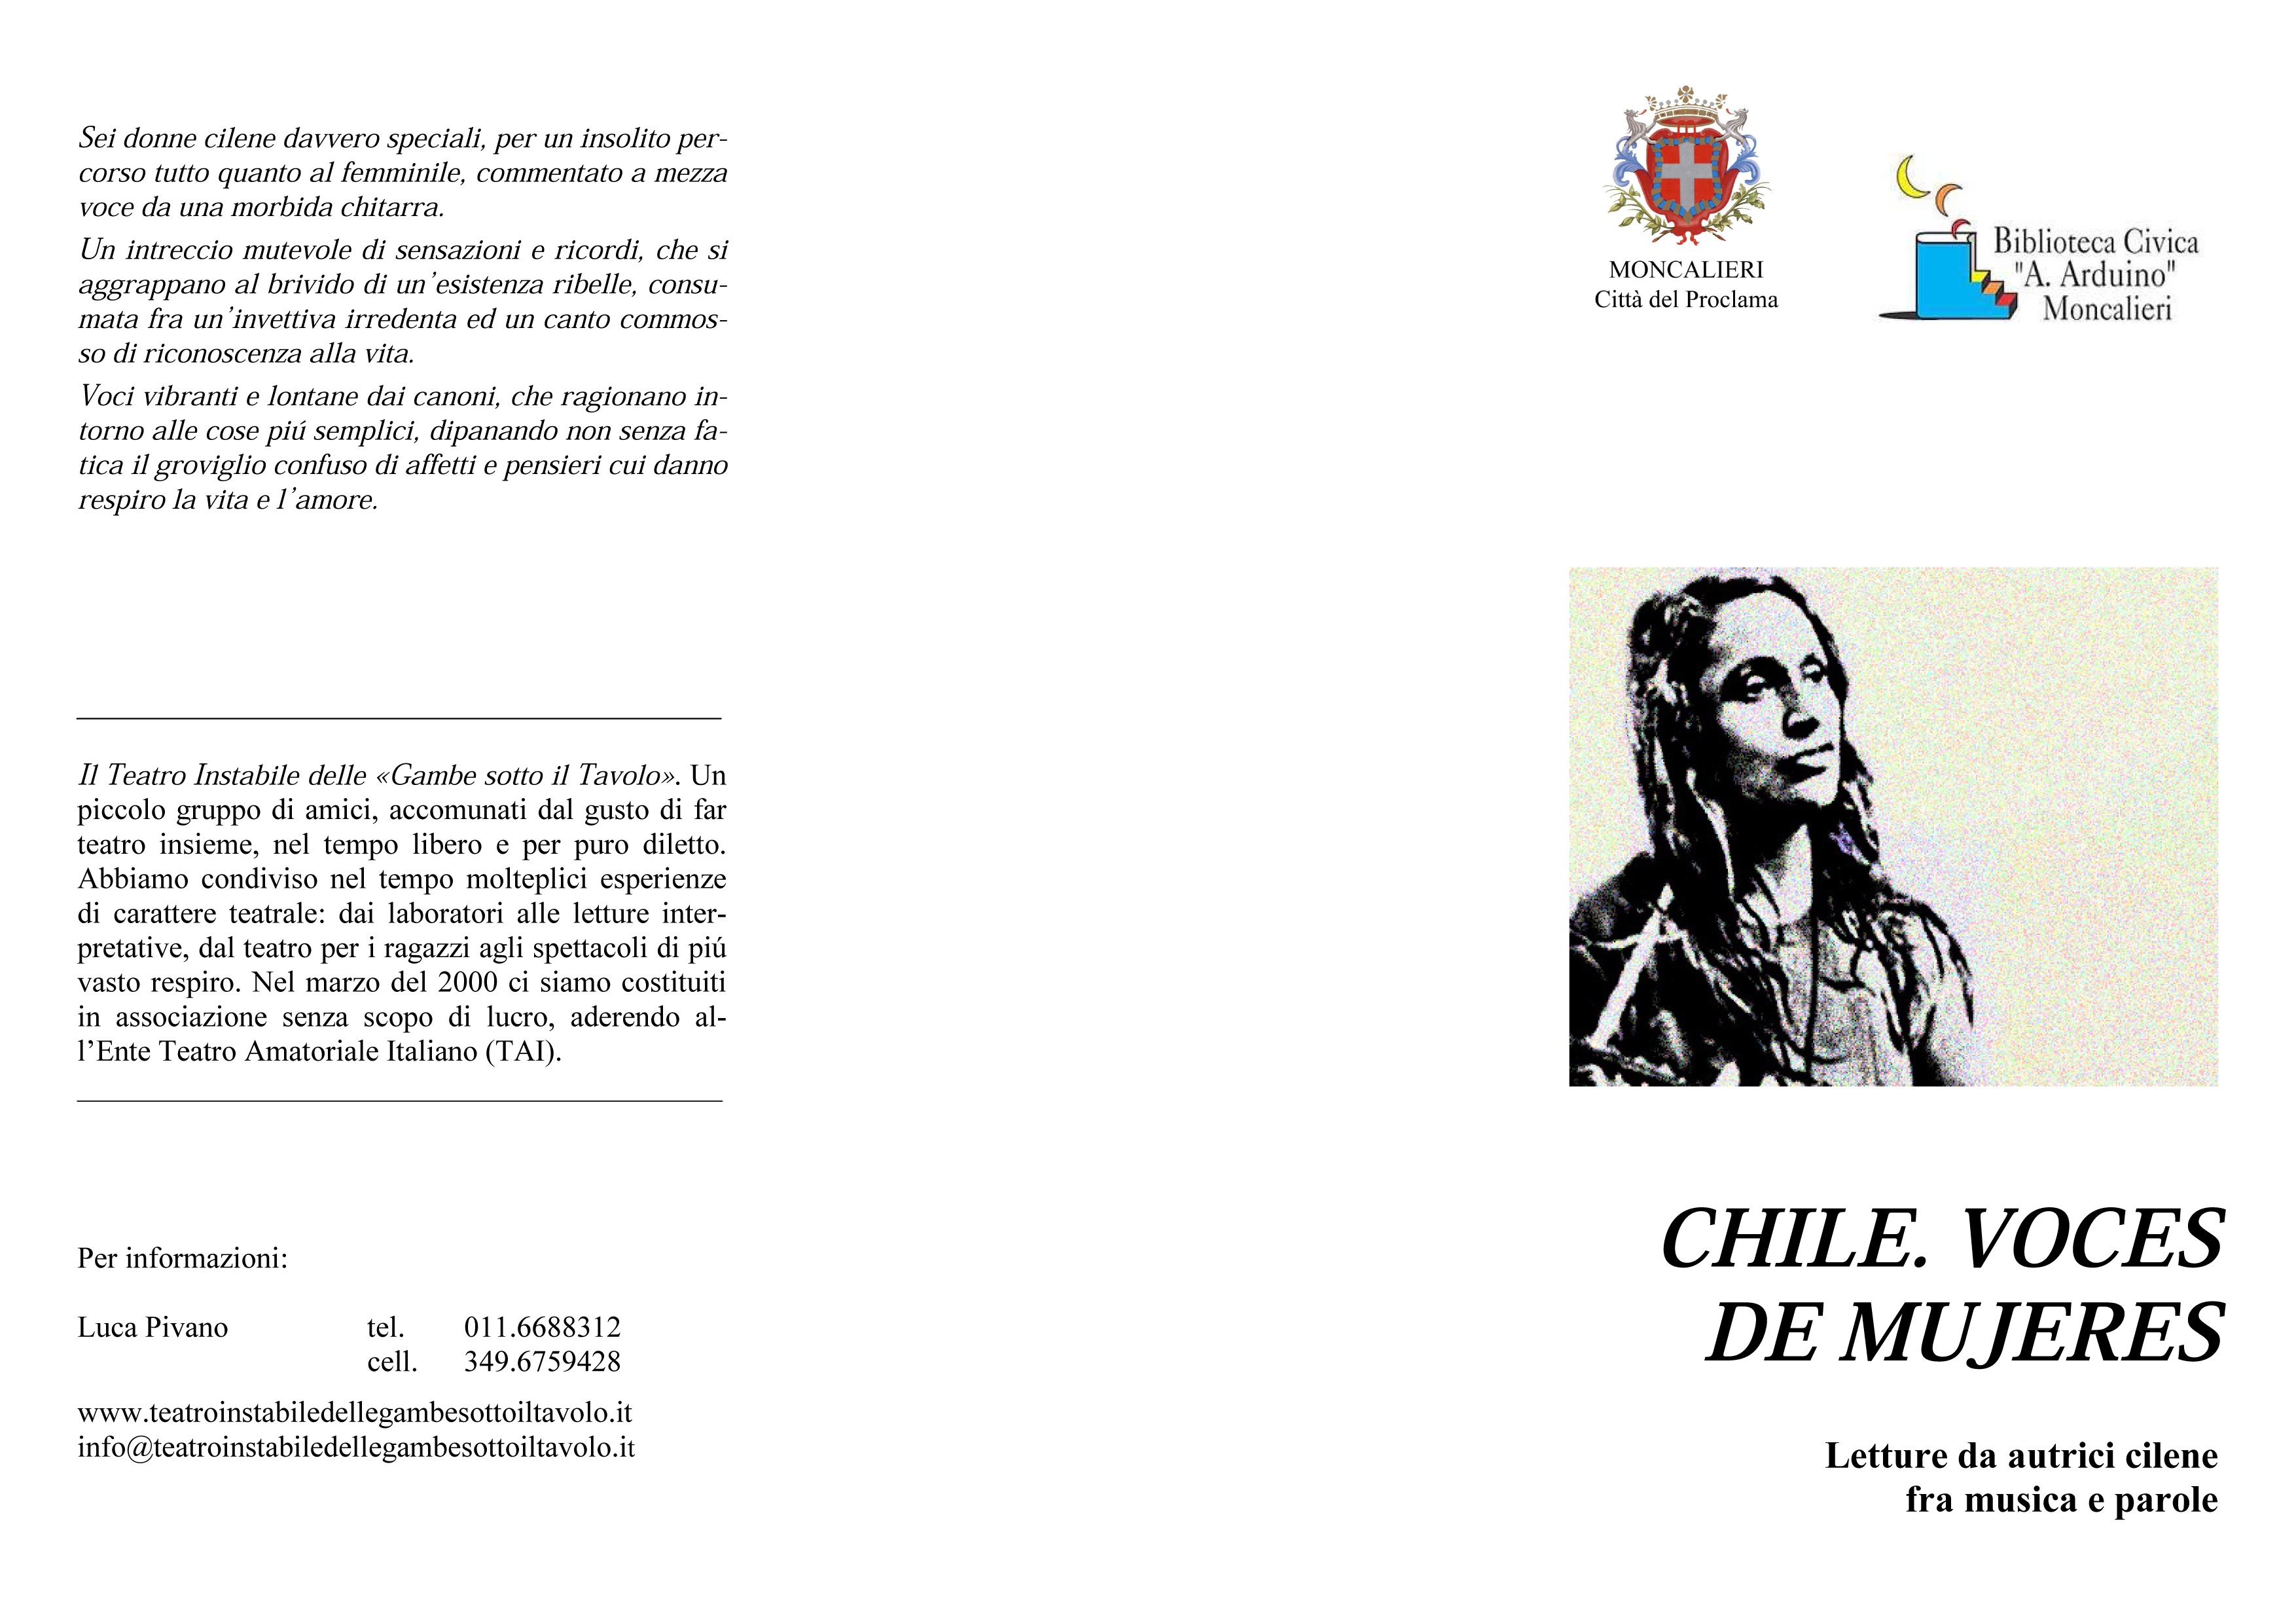 Chile. Voces des mujeres_sa_moncalieri